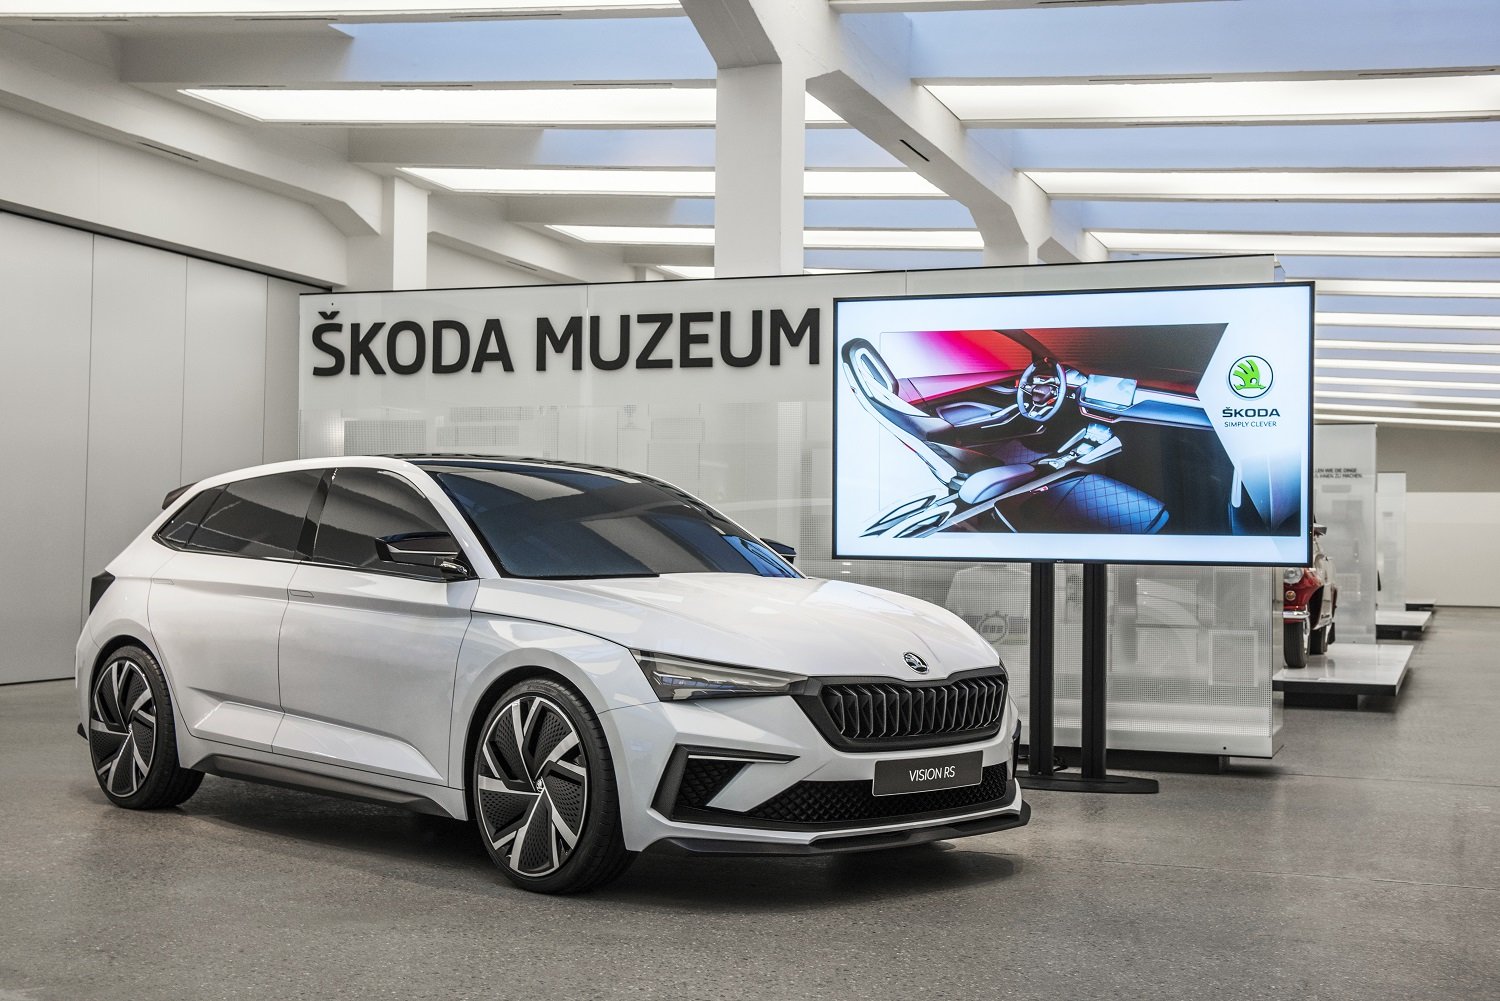 Od úterý 2. října do neděle 14. října je v prostorách mladoboleslavského Škoda Muzea exkluzivně vystaven hliněný model konceptu Vision RS v reálné velikosti